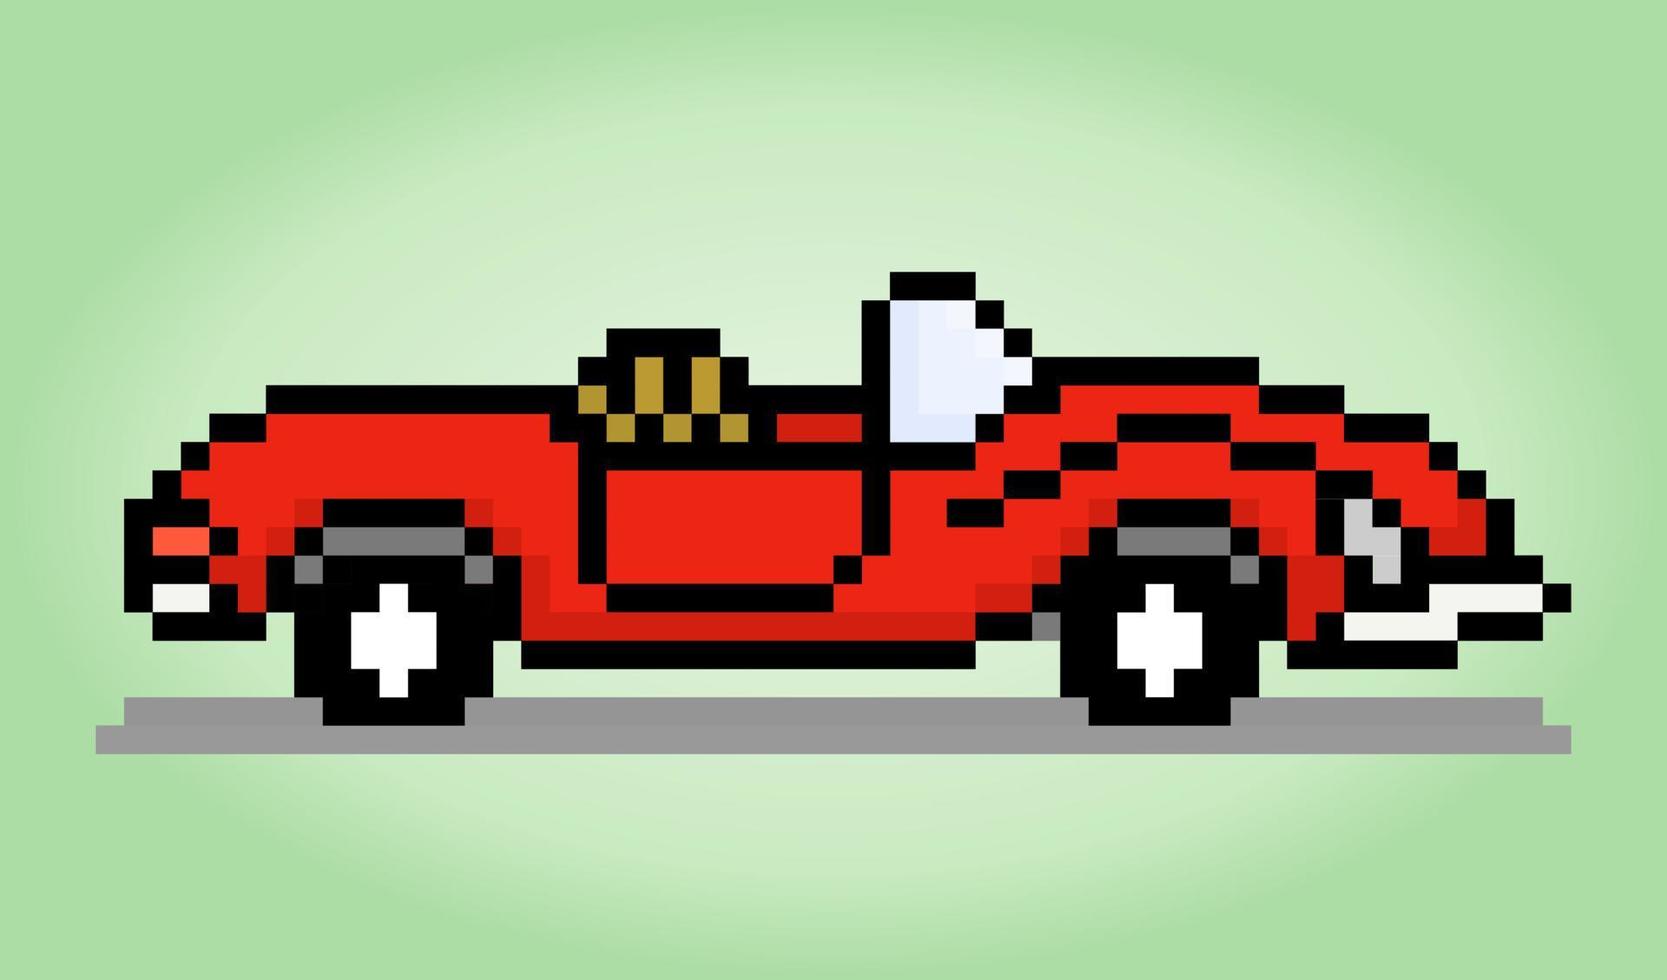 pixel art classique de voiture 8 bits. illustration vectorielle d'un modèle de point de croix de voiture. vecteur